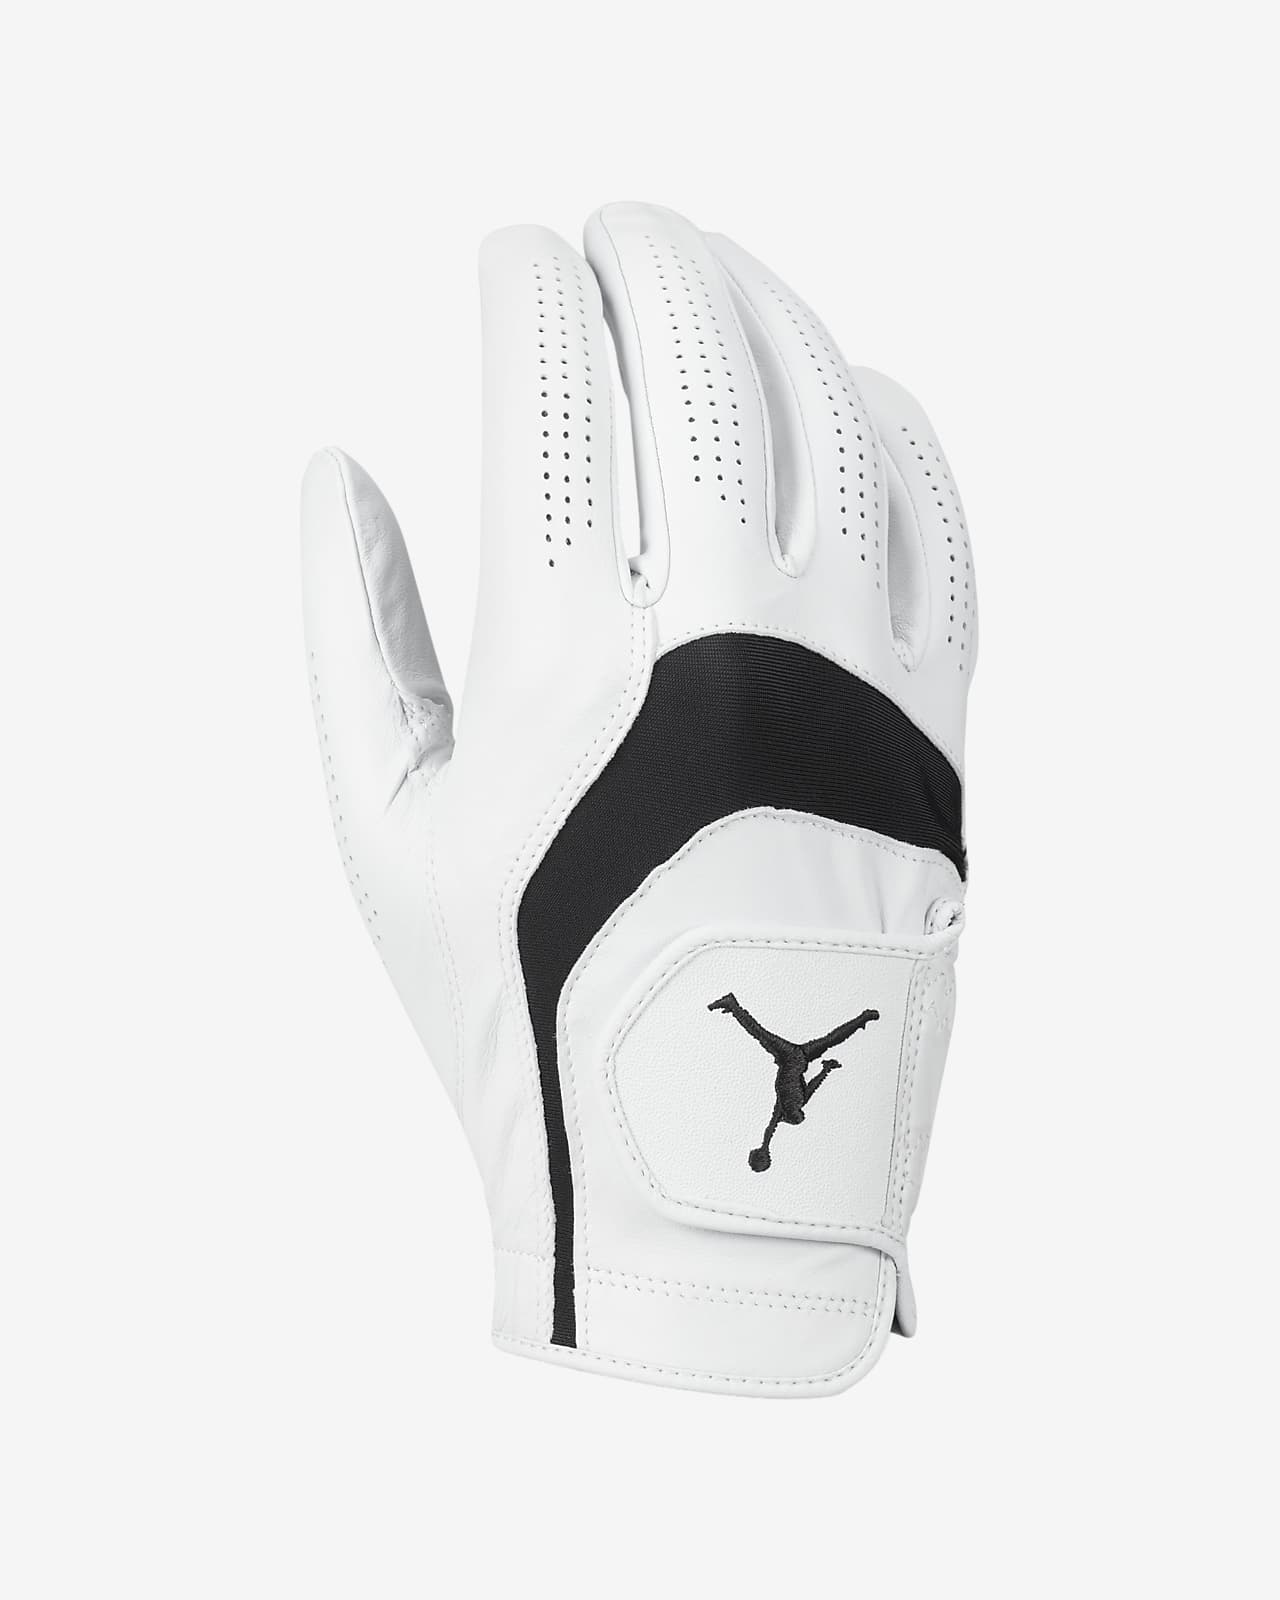 atoom pantoffel Bewustzijn Jordan Tour Regular Golf Glove (Right). Nike.com